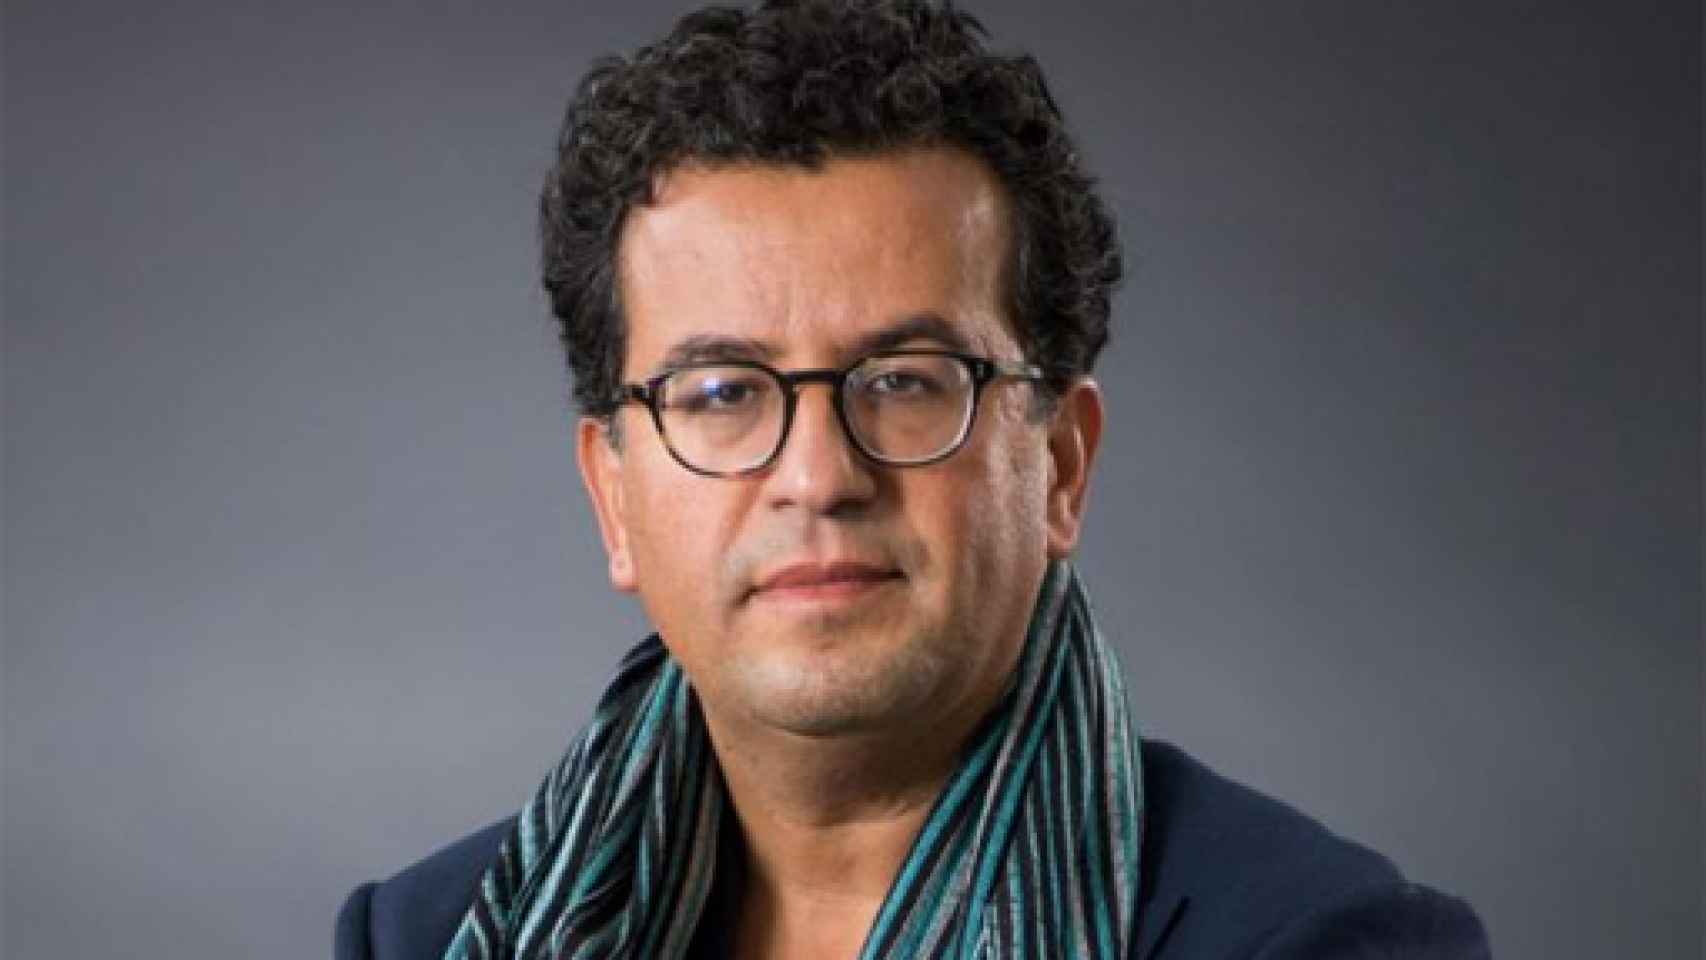 Image: Hisham Matar, Premio Pulitzer de Biografía